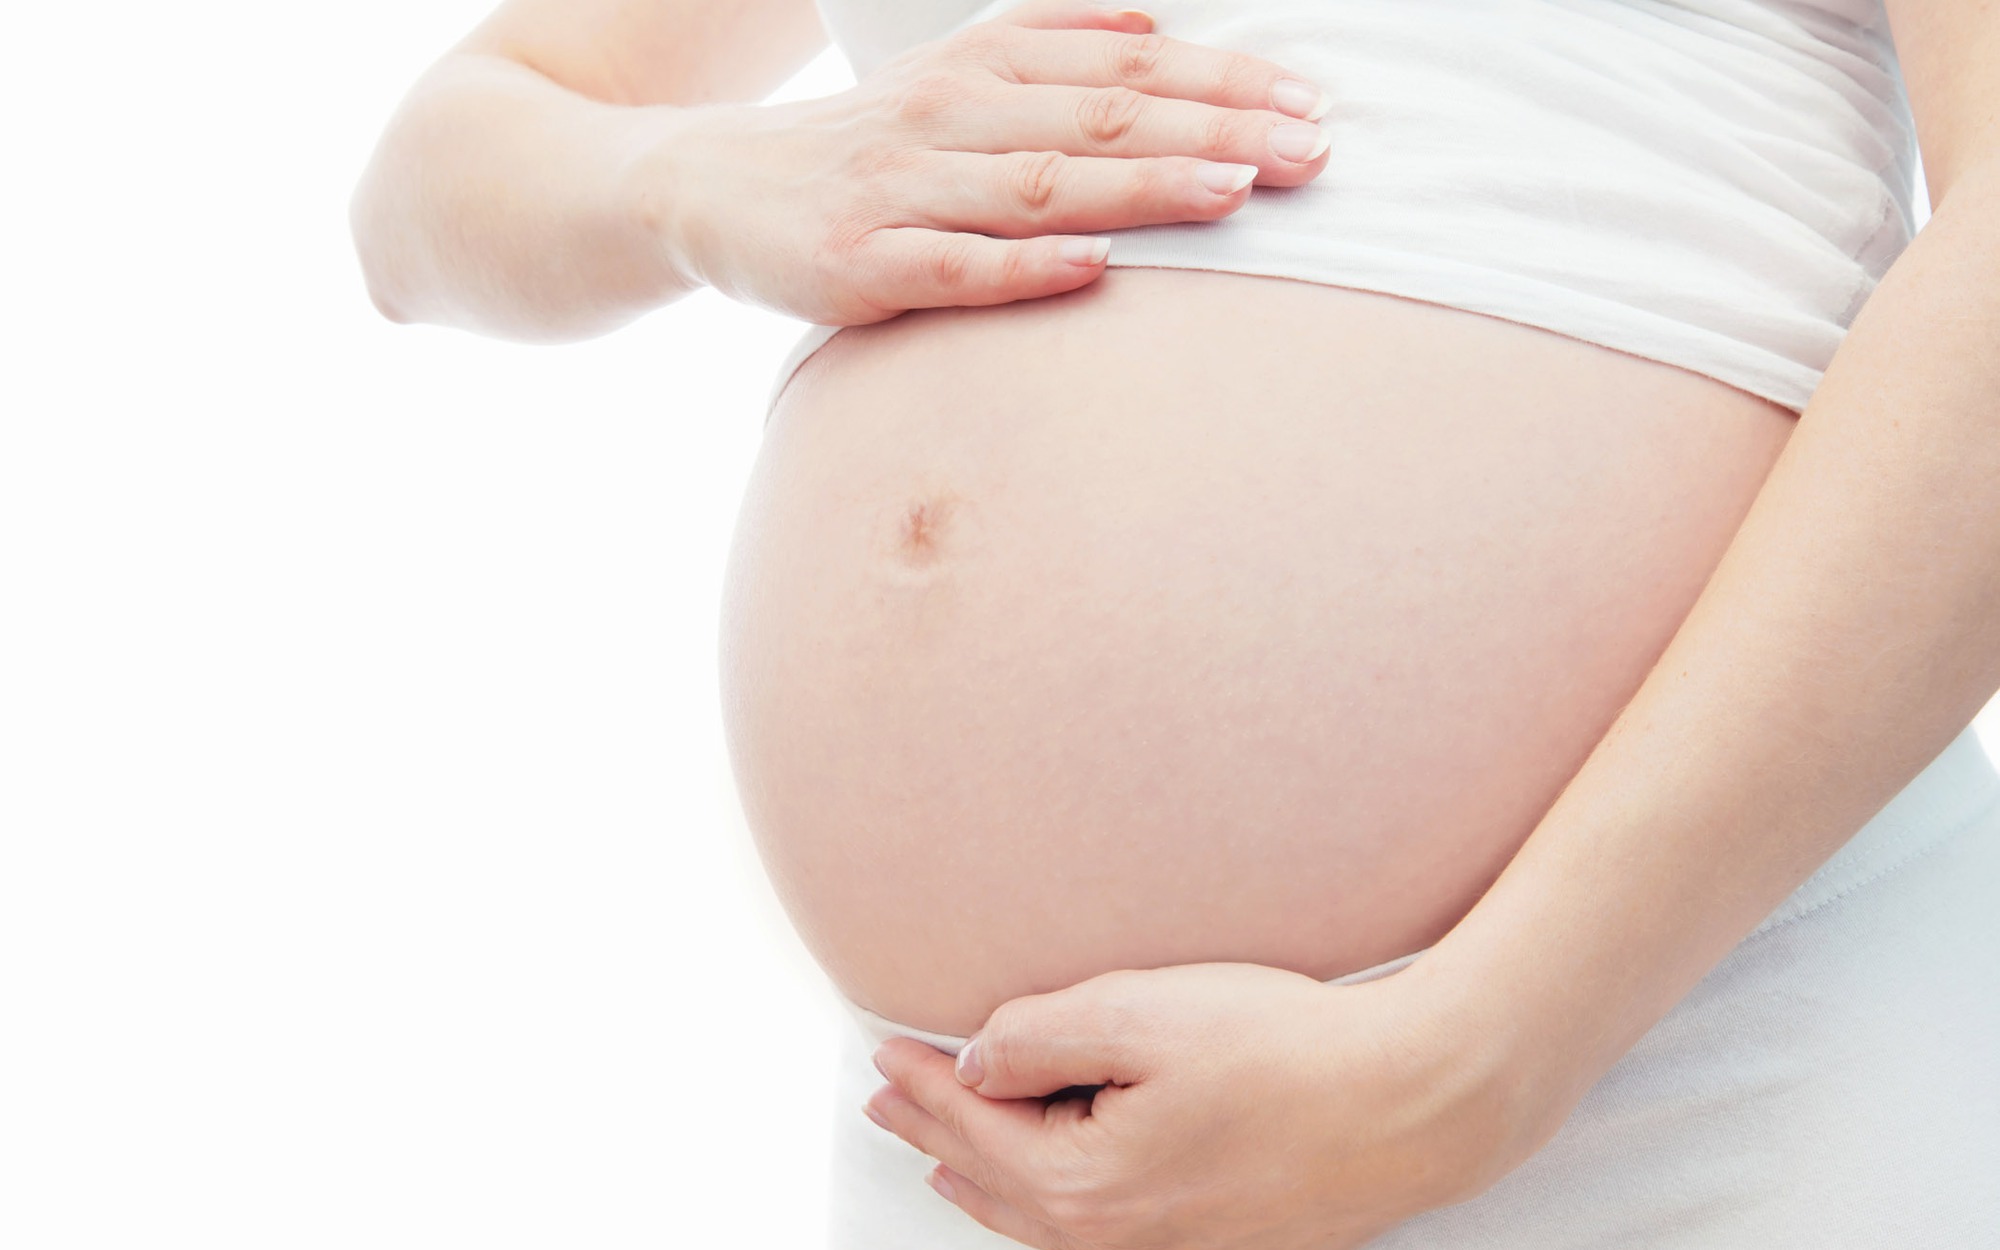 Những dấu hiệu mẹ bầu bị đa ối và cách xử trí giúp thai kỳ an toàn